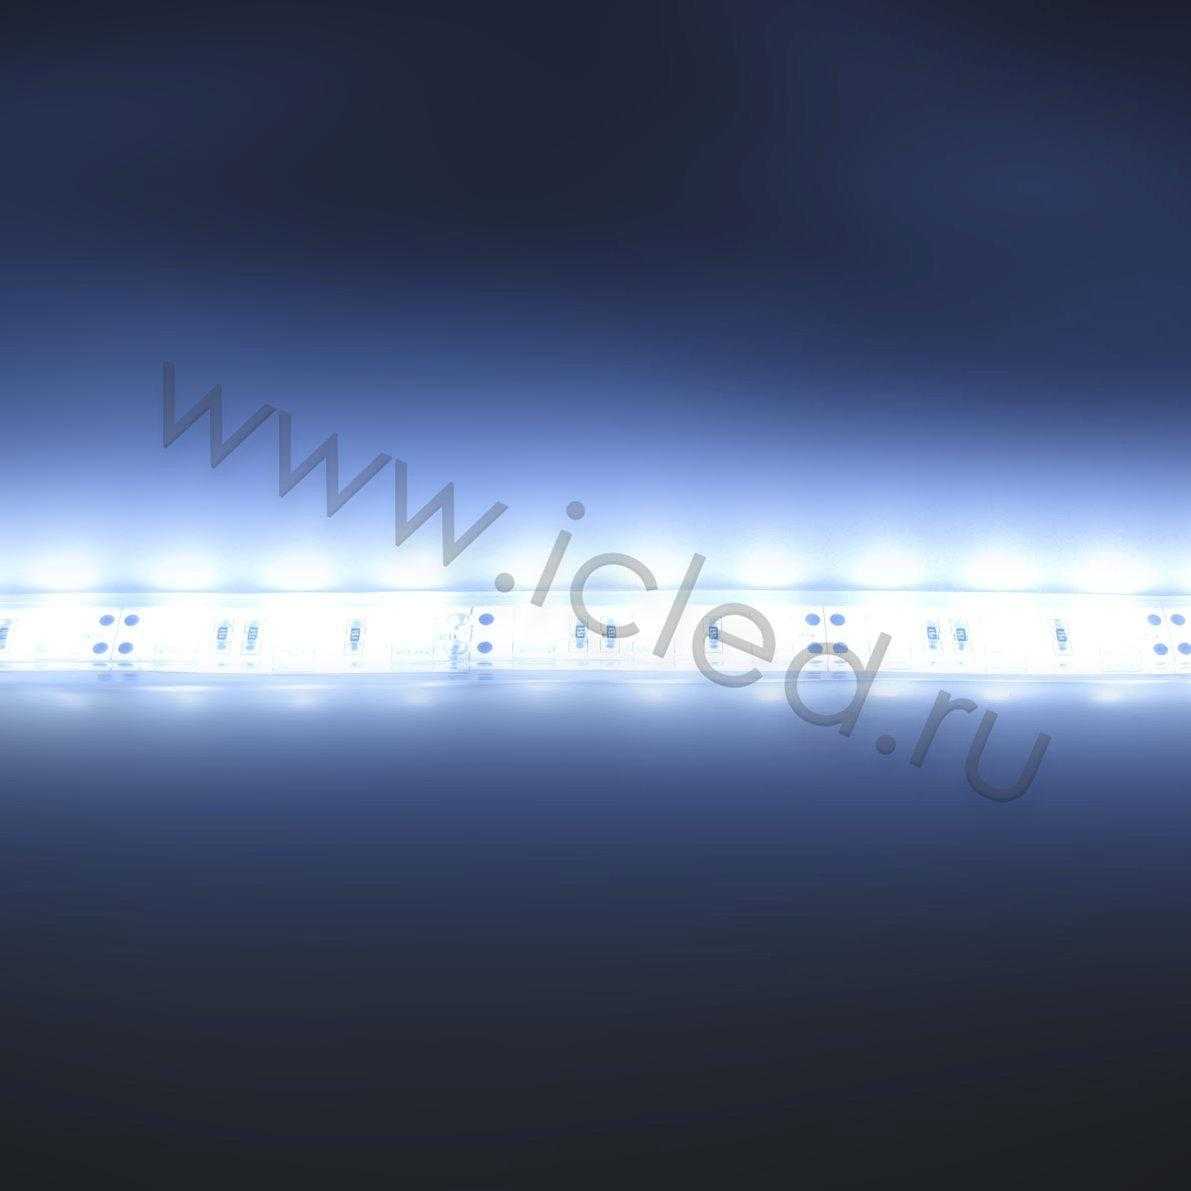 Влагозащищенные светодиодные ленты Светодиодная лента LUX class, 5050, 60 led/m, Cool White,24V,P622, IP68 Icled